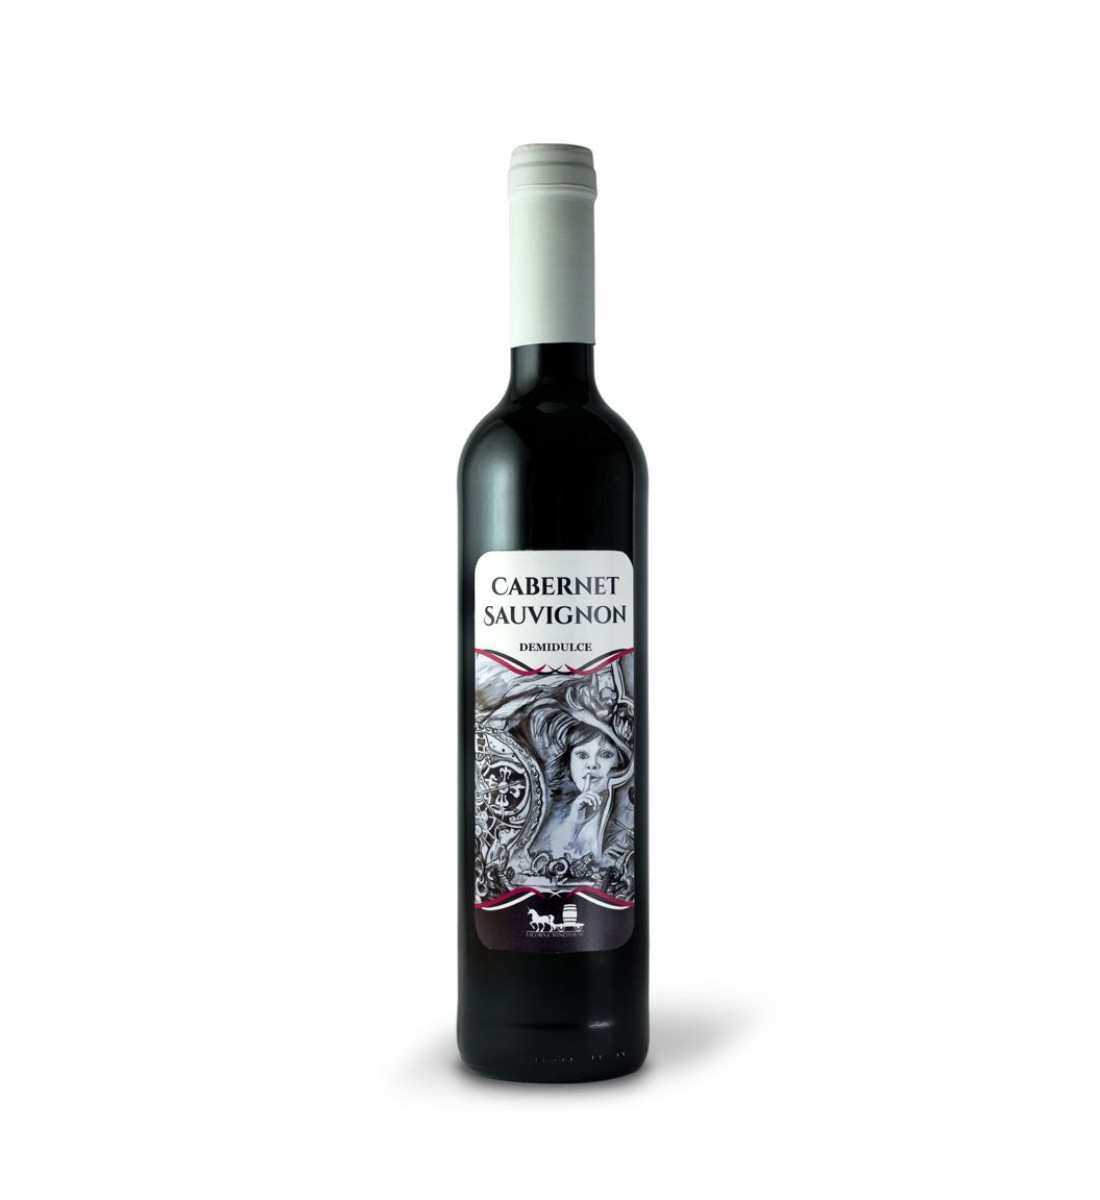 Licorna Cabernet Sauvignon - Vin Rosu Demidulce - Romania - 0.5L